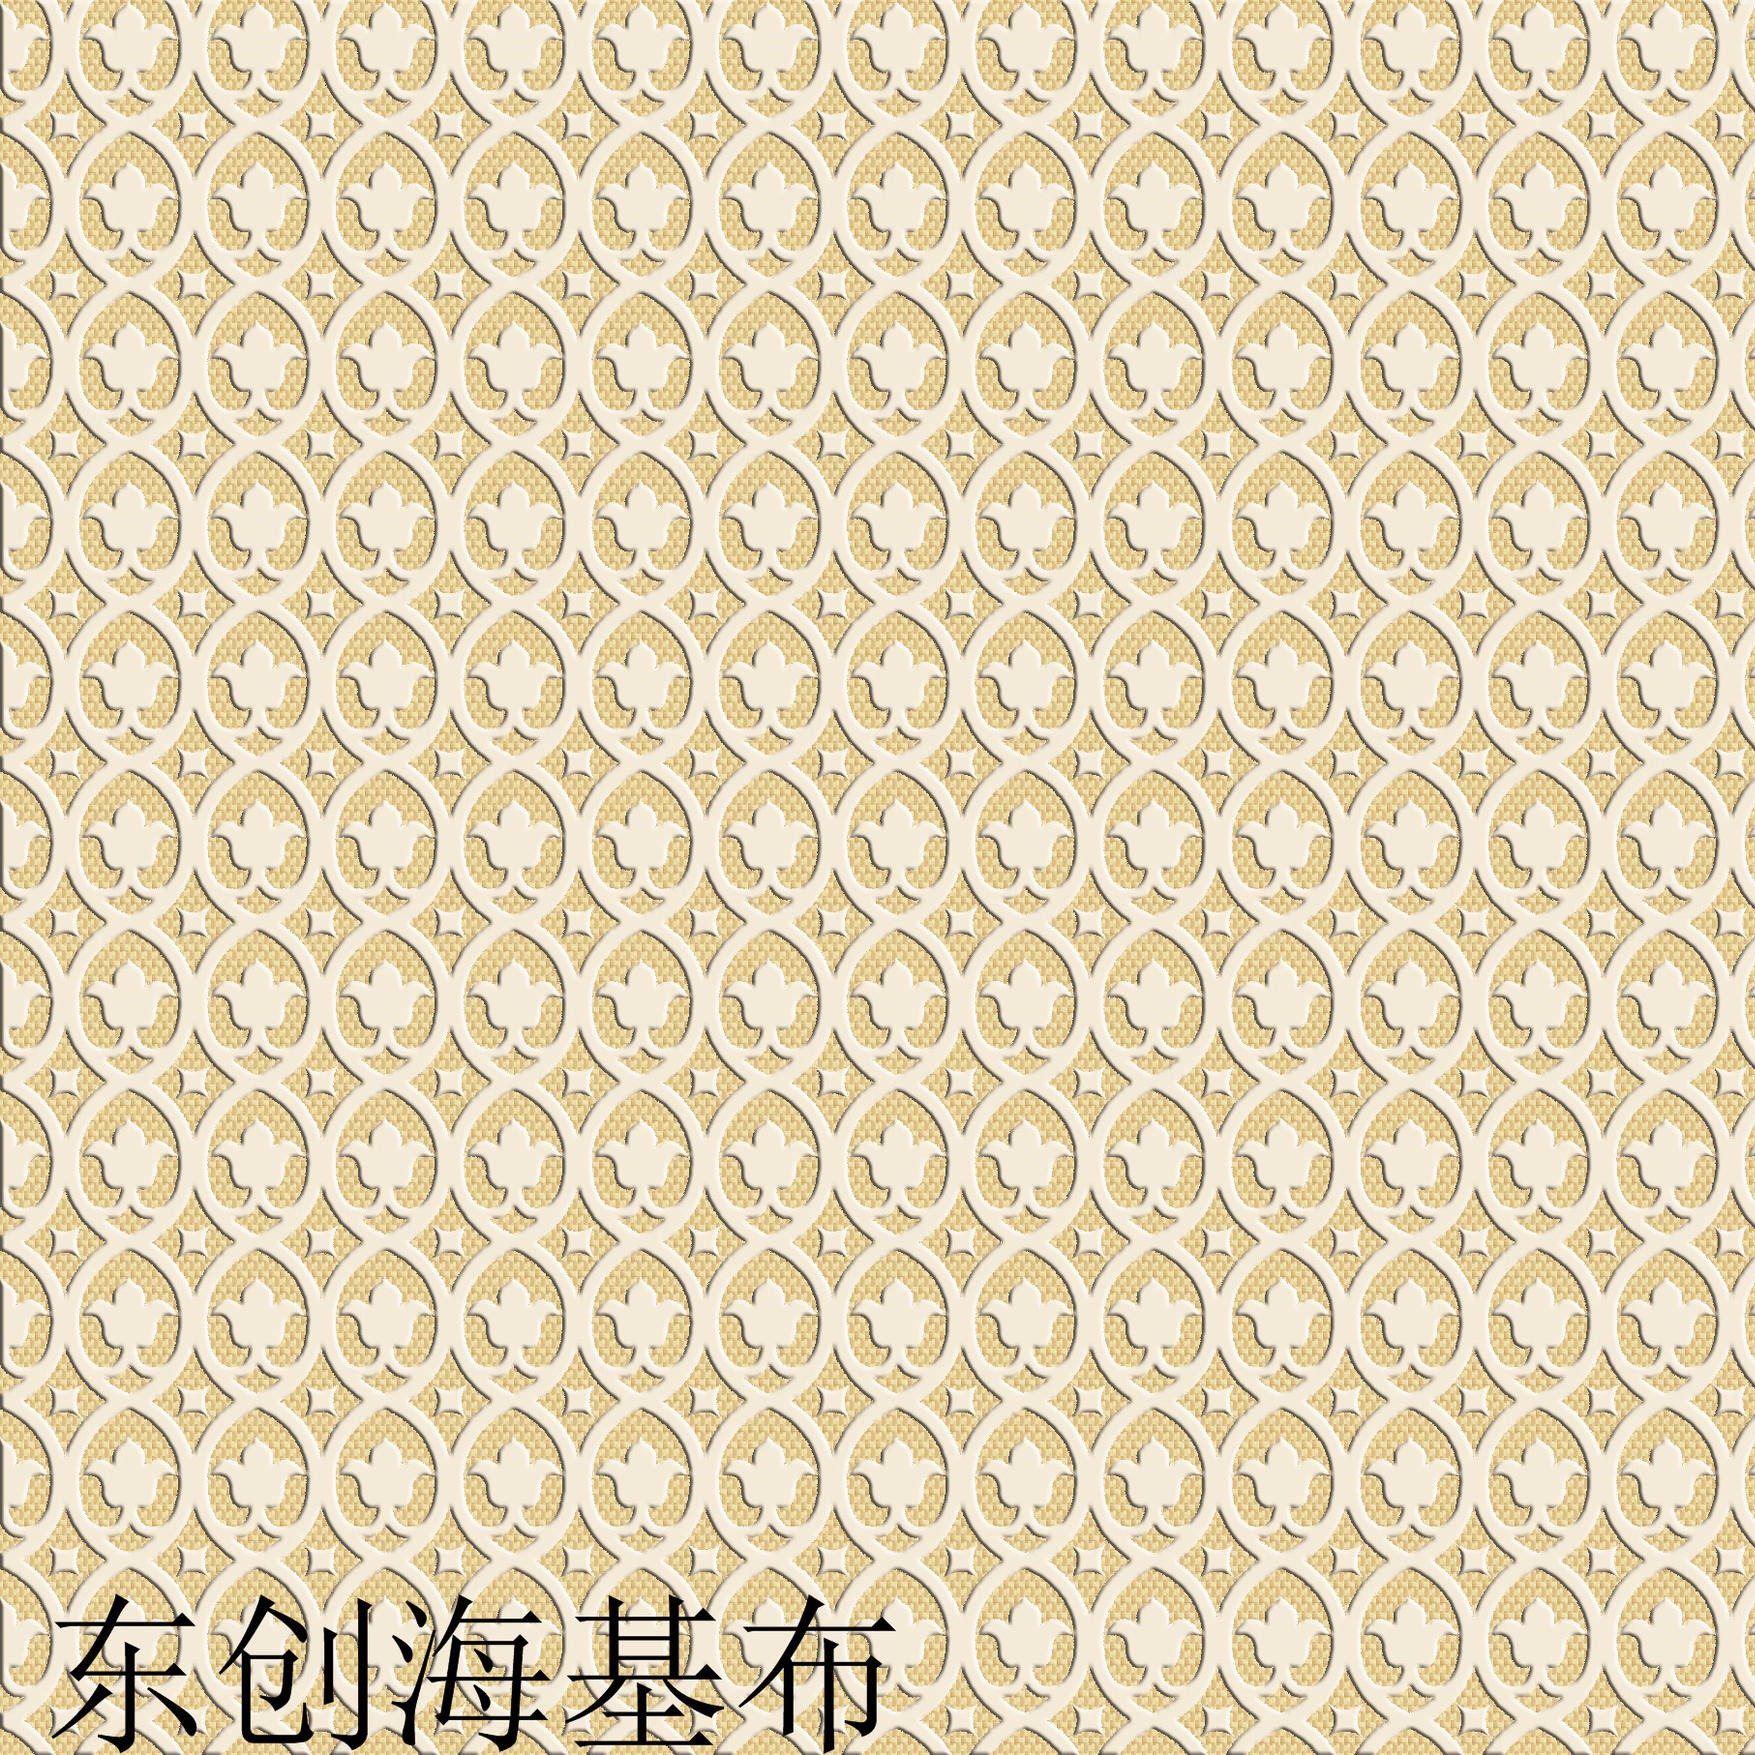 南京海基布 东创海吉布 墙基布 环保建材 玻纤壁布 玻纤布 石英壁布 厂家 价格 品牌 防裂